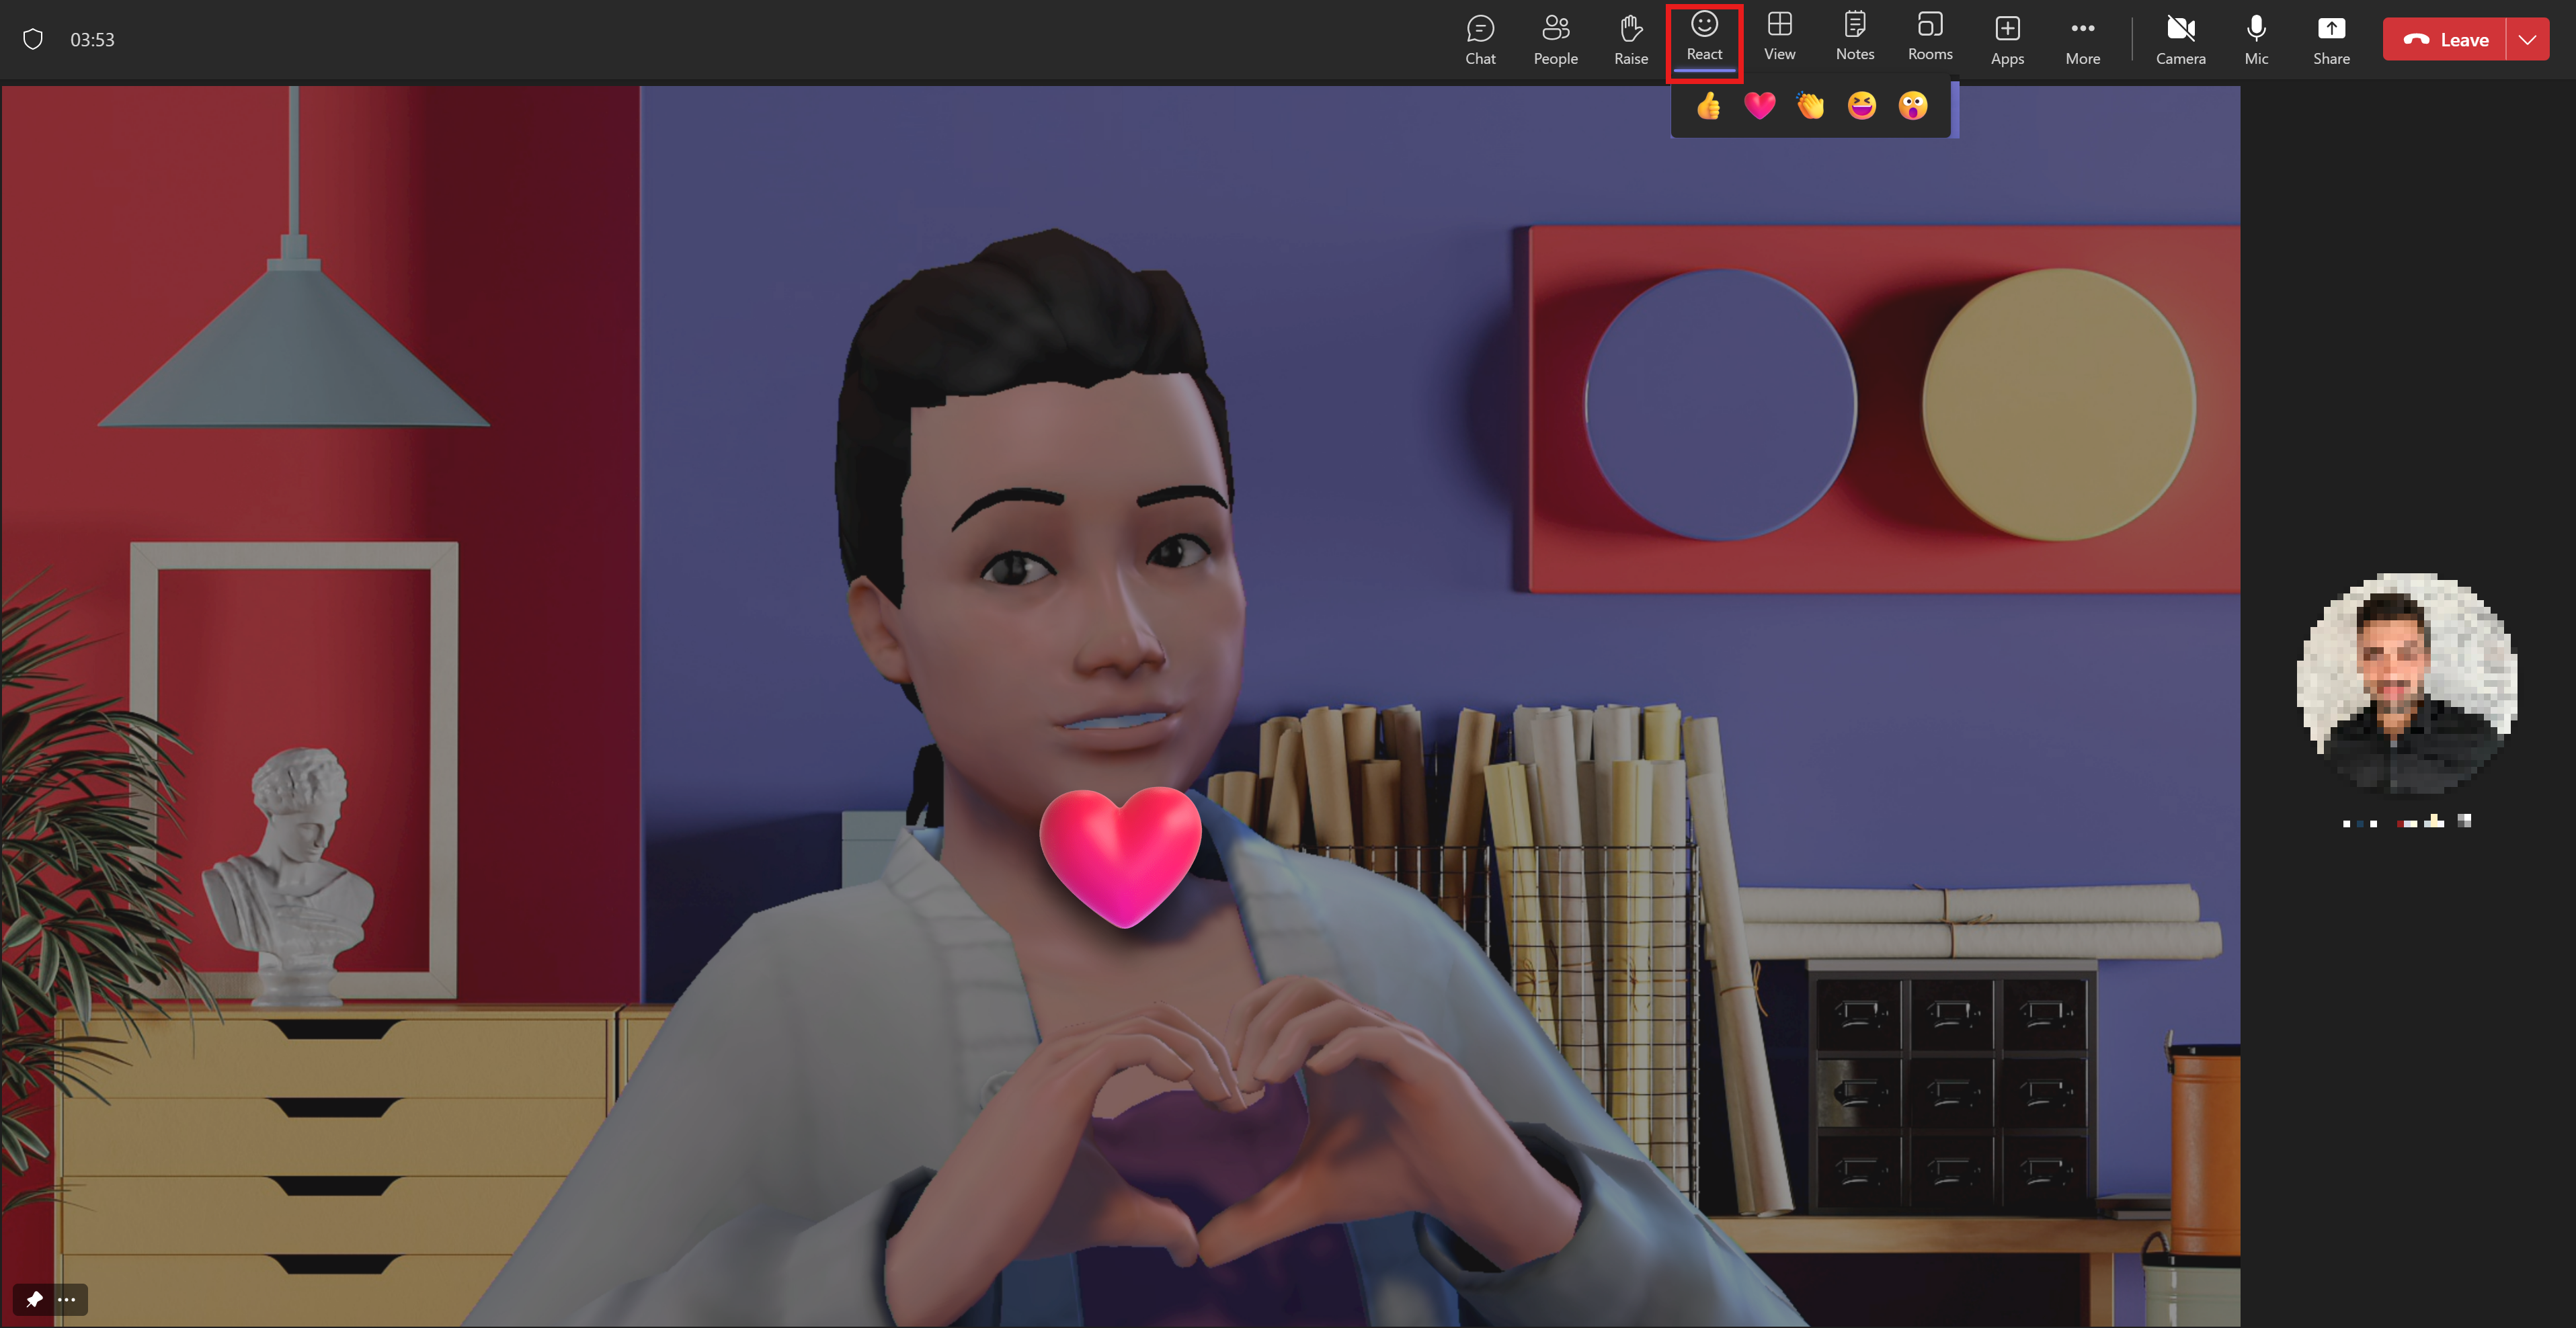 En avatar visar hennes kärlek genom att göra ett hjärta med händerna